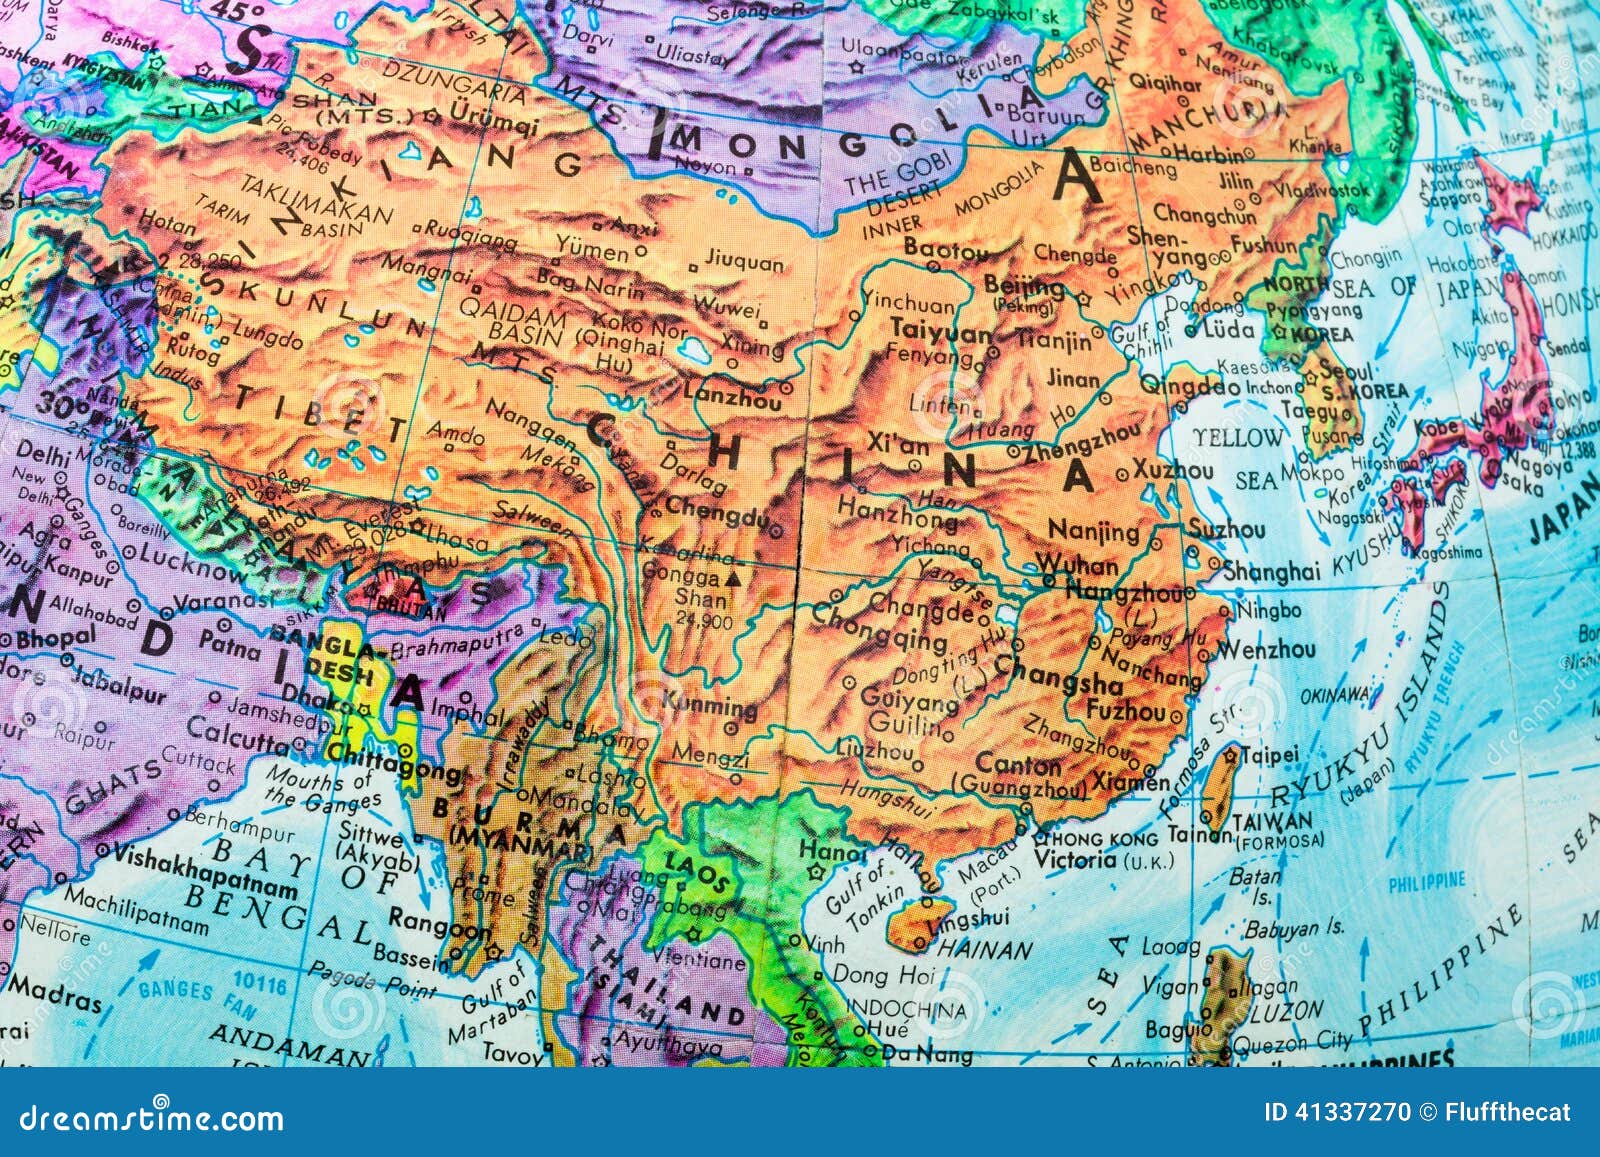 Где располагался древний китай. Карта древнего Китая. Географическая карта древнего Китая.